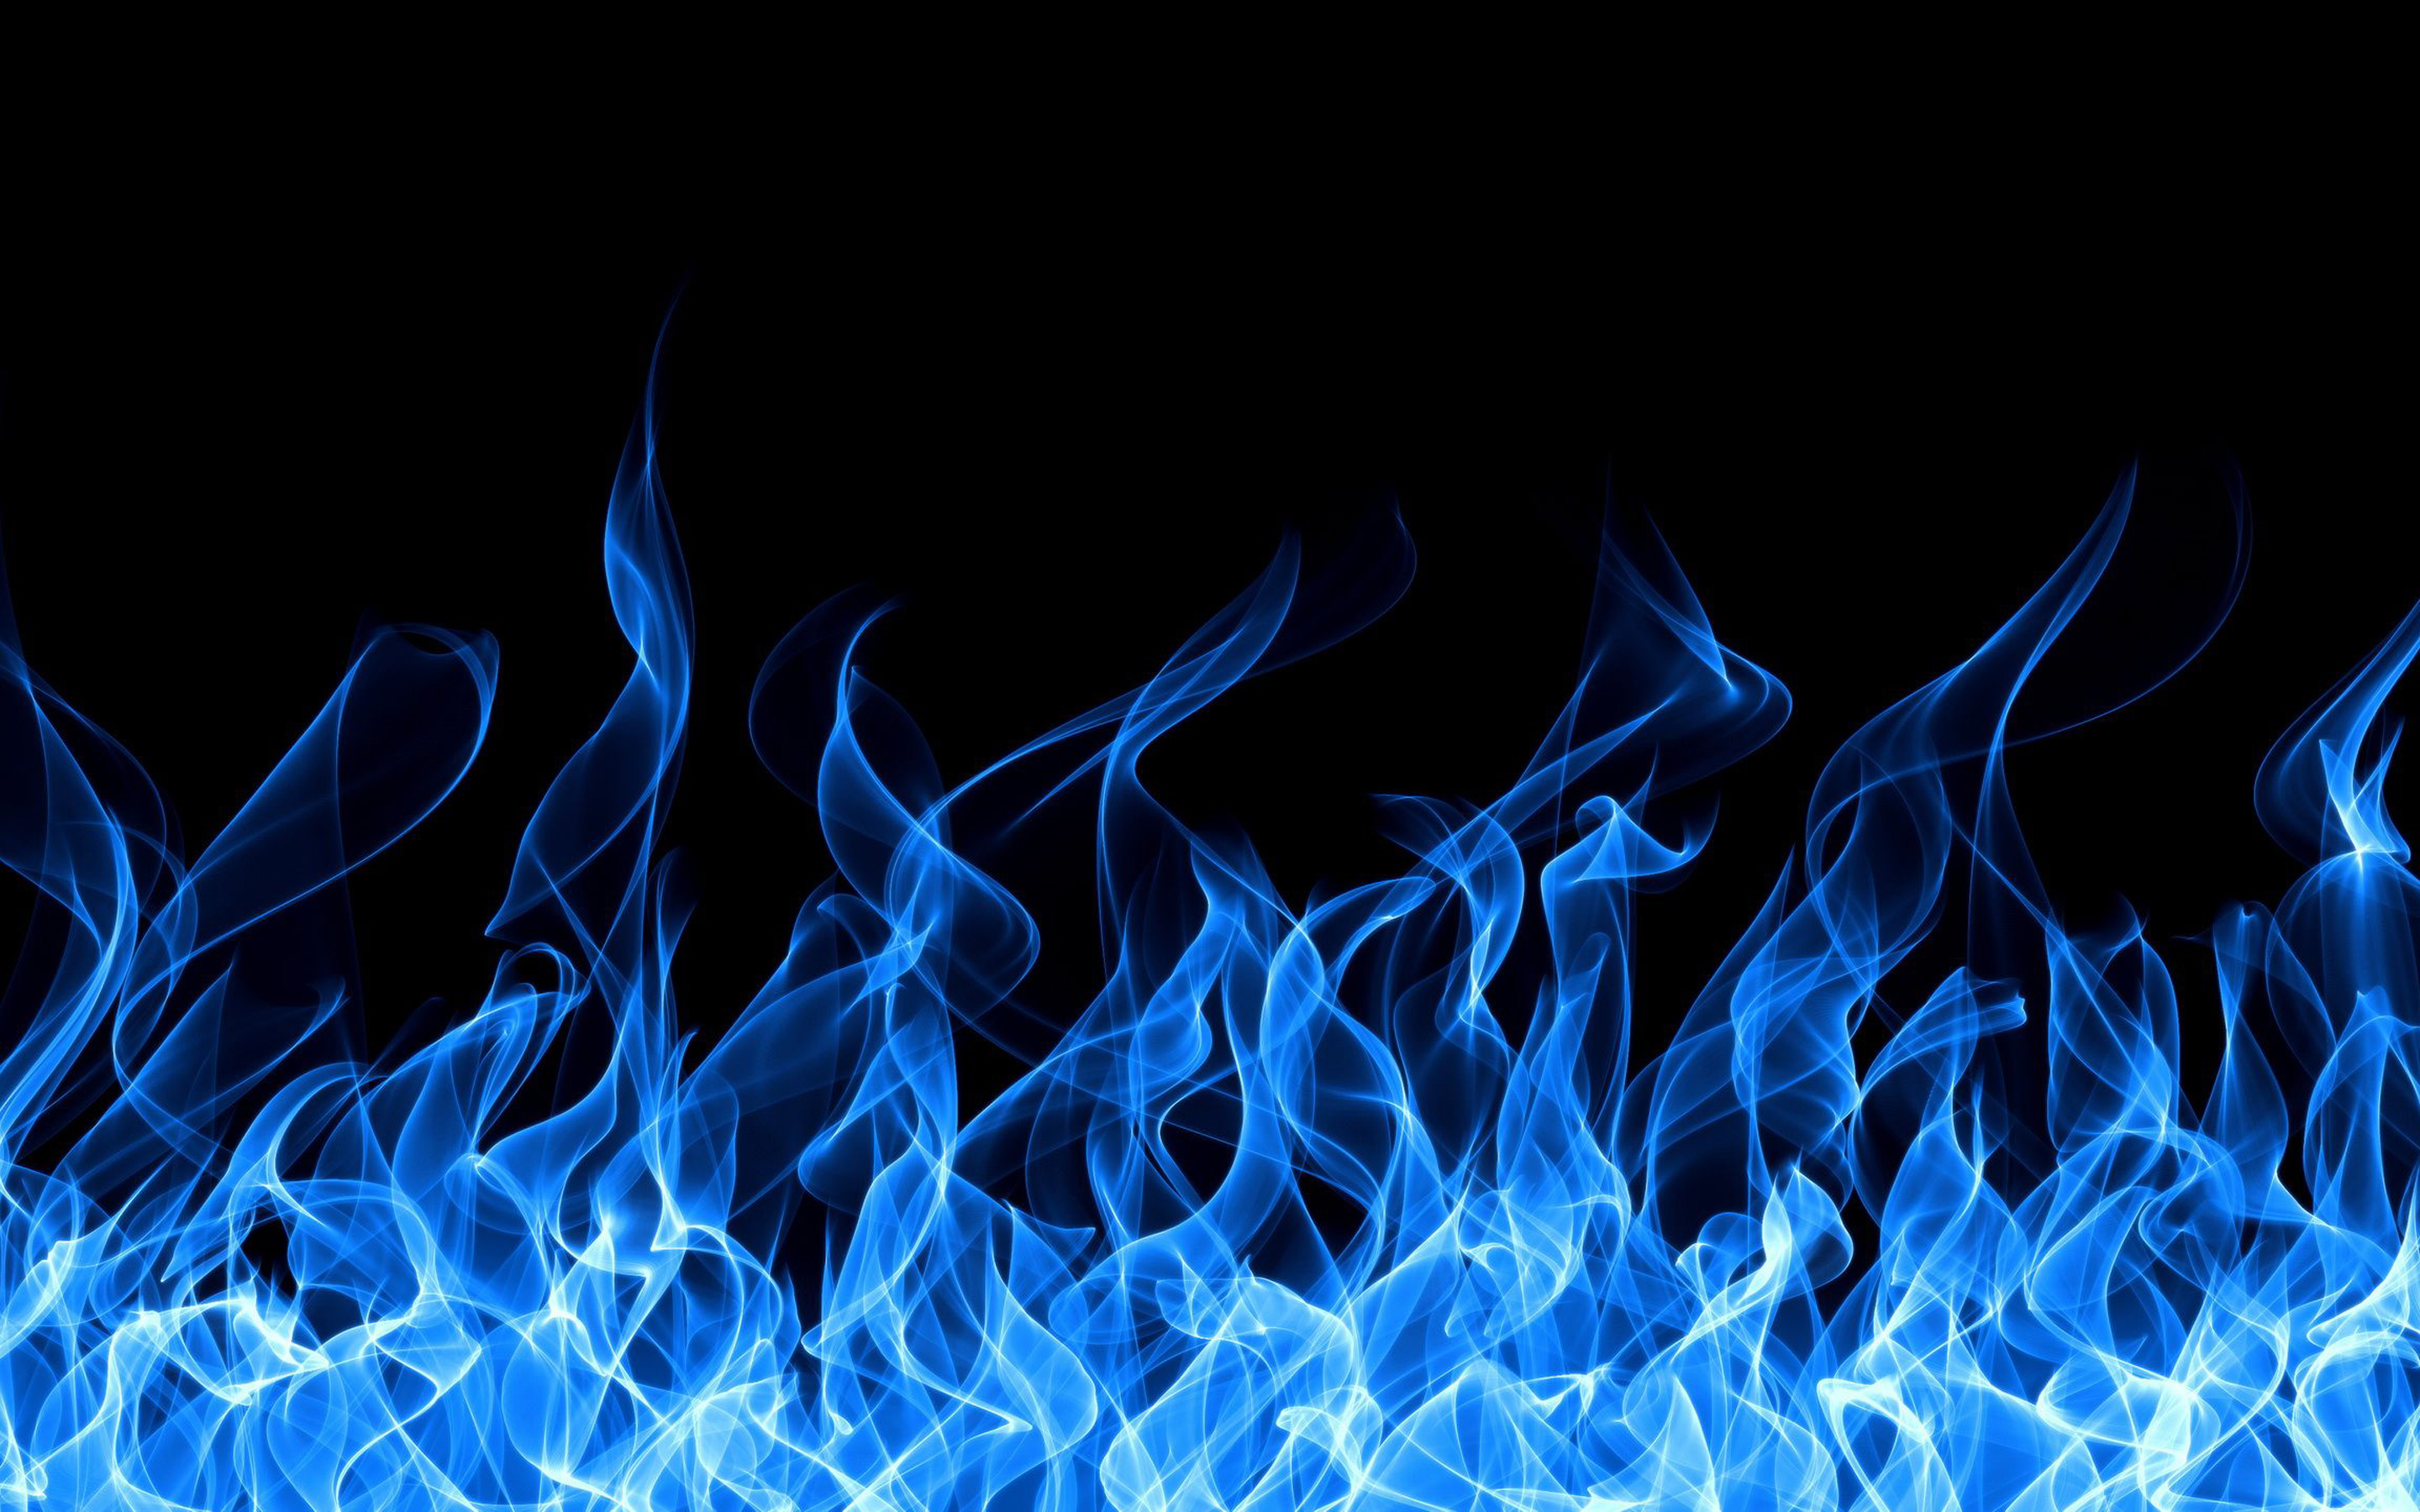 ダウンロード画像 青い火の背景 Type 火のテクスチャ 青い火の炎 火 火の背景 火の炎 画面の解像度 x1800 壁紙デスクトップ上